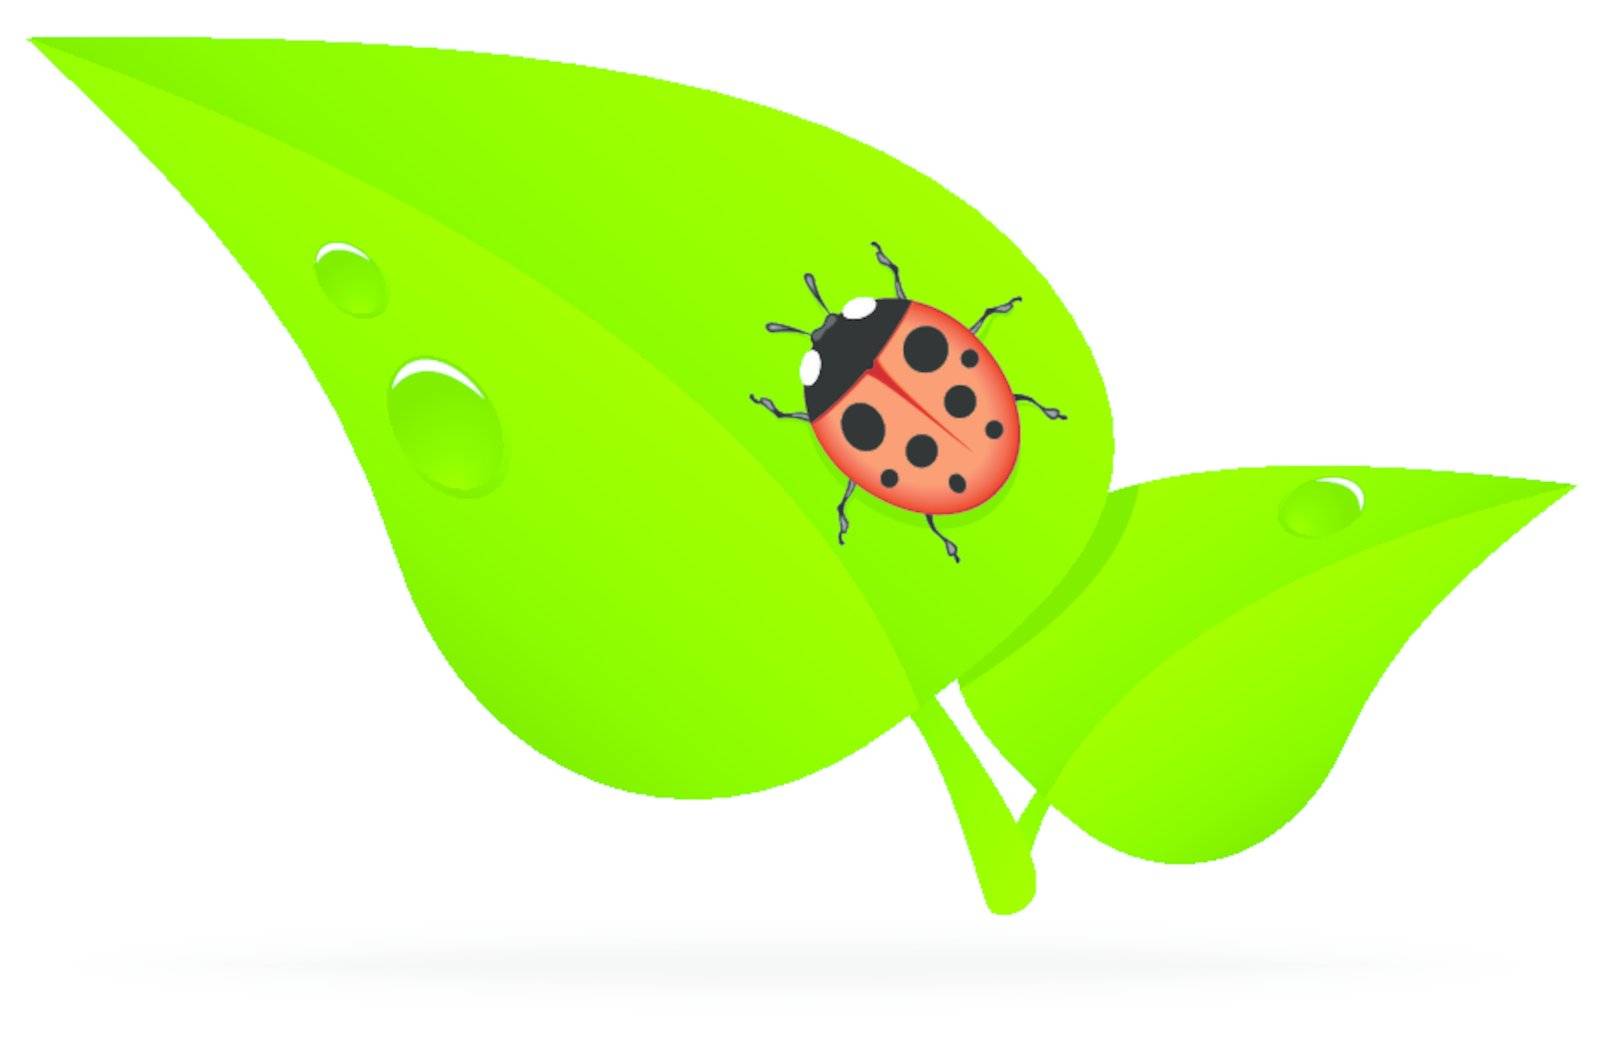 ladybug on a green leaf with dew drops